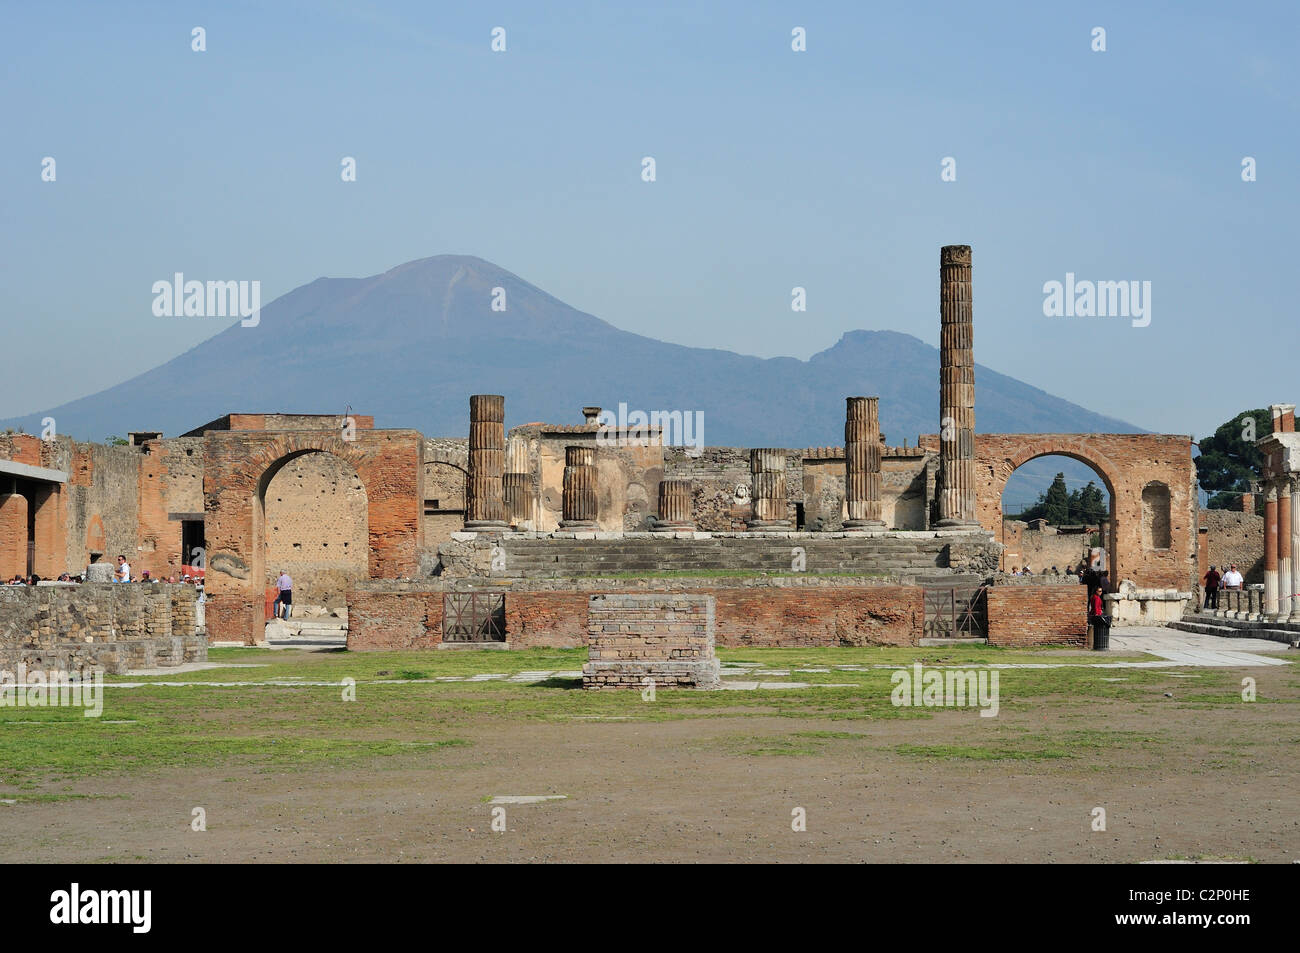 Pompei. Italien. Antike Ruinen des Forums von Pompeji, mit dem Vesuv im Hintergrund, Pompeji archäologische Stätte. Stockfoto